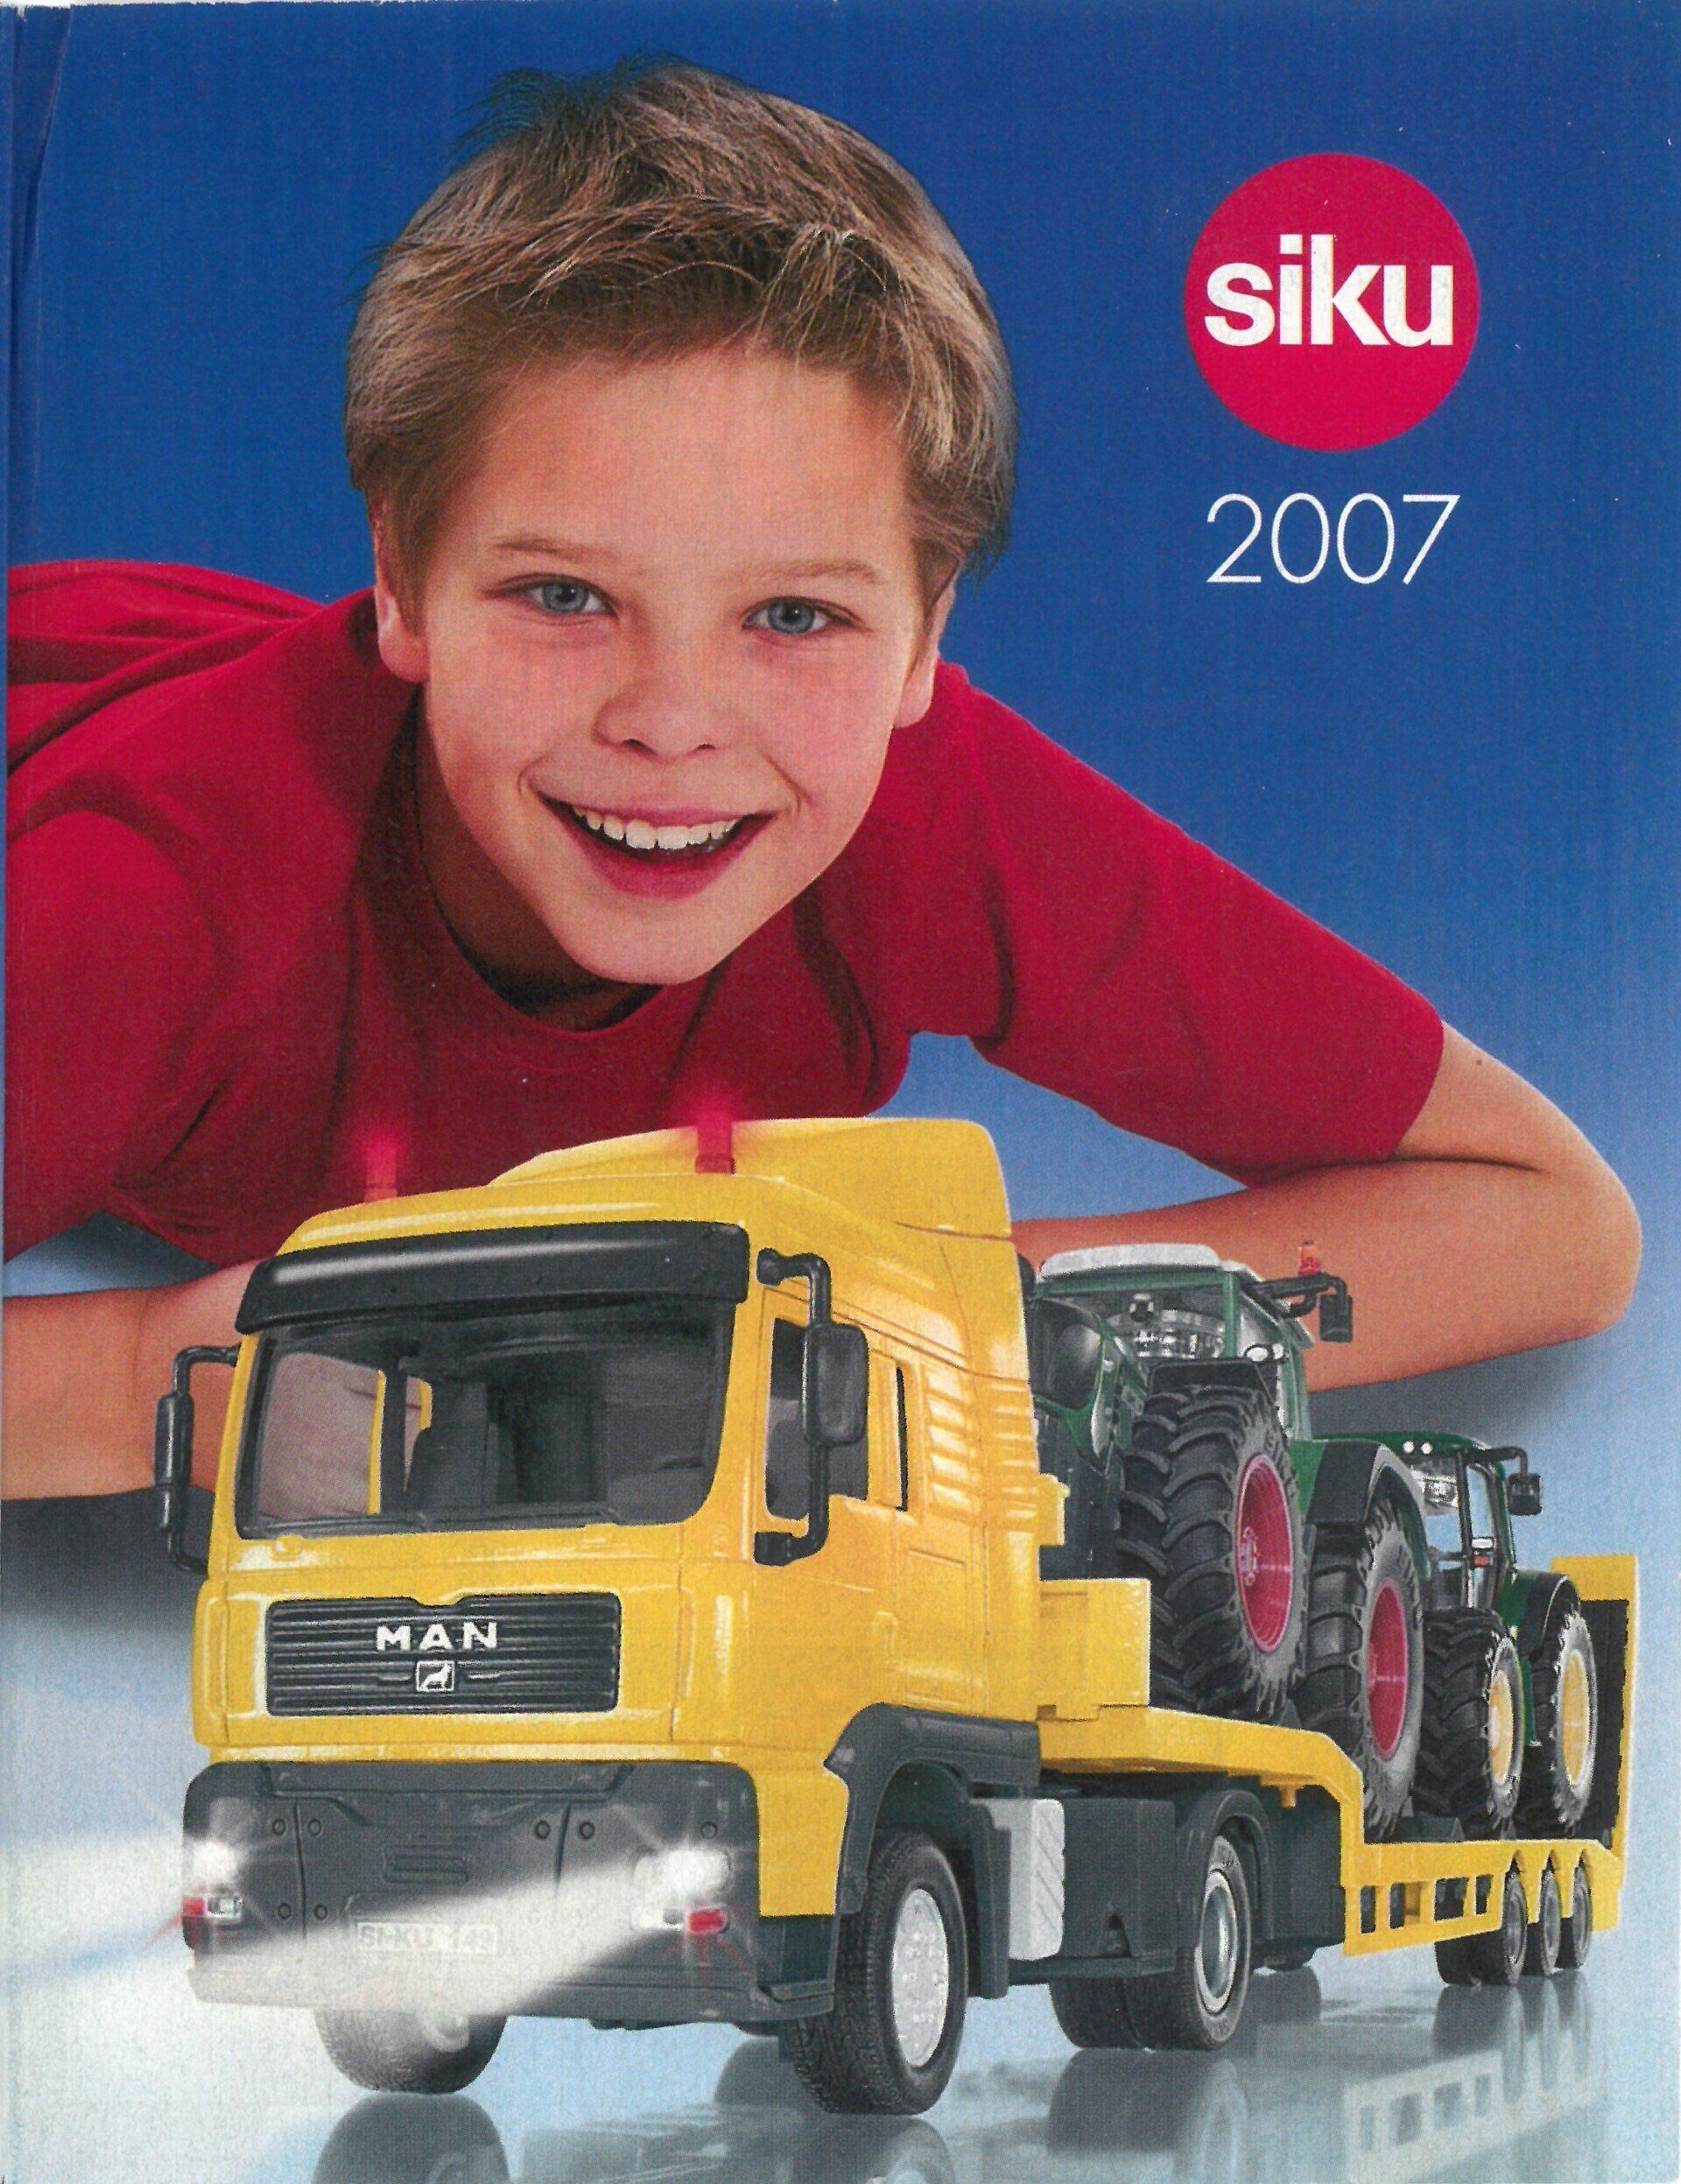 Siku catalogue 2007